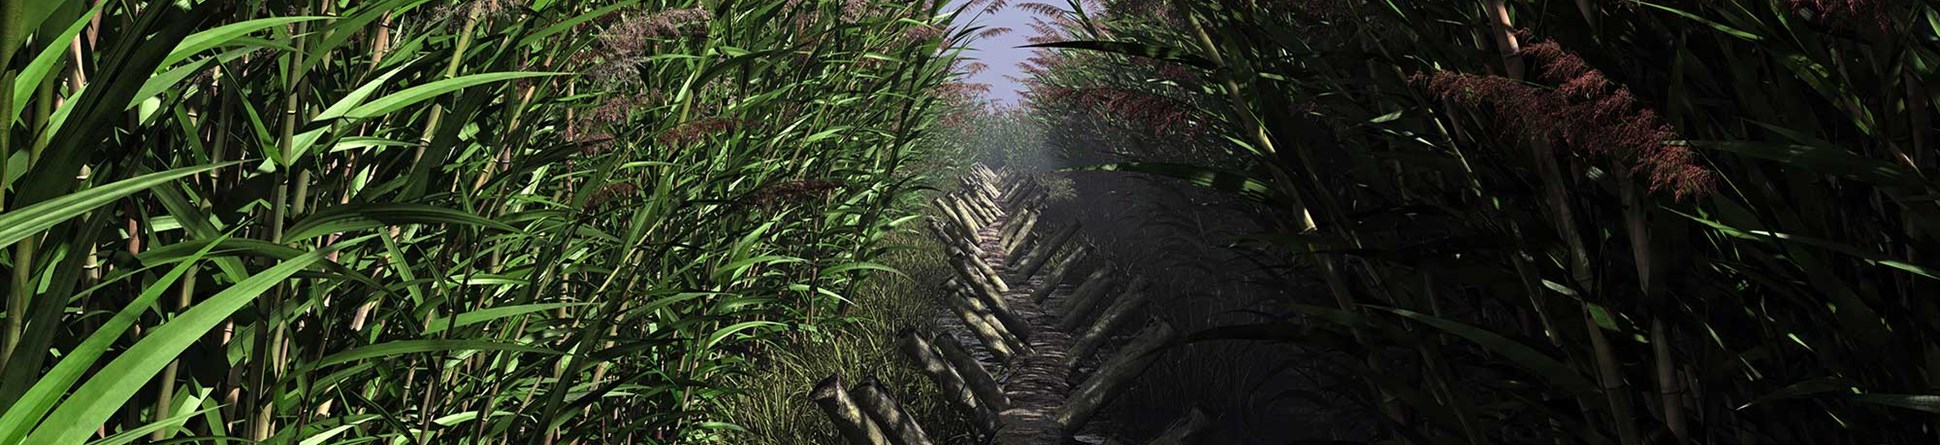 Wooden walkway between reeds